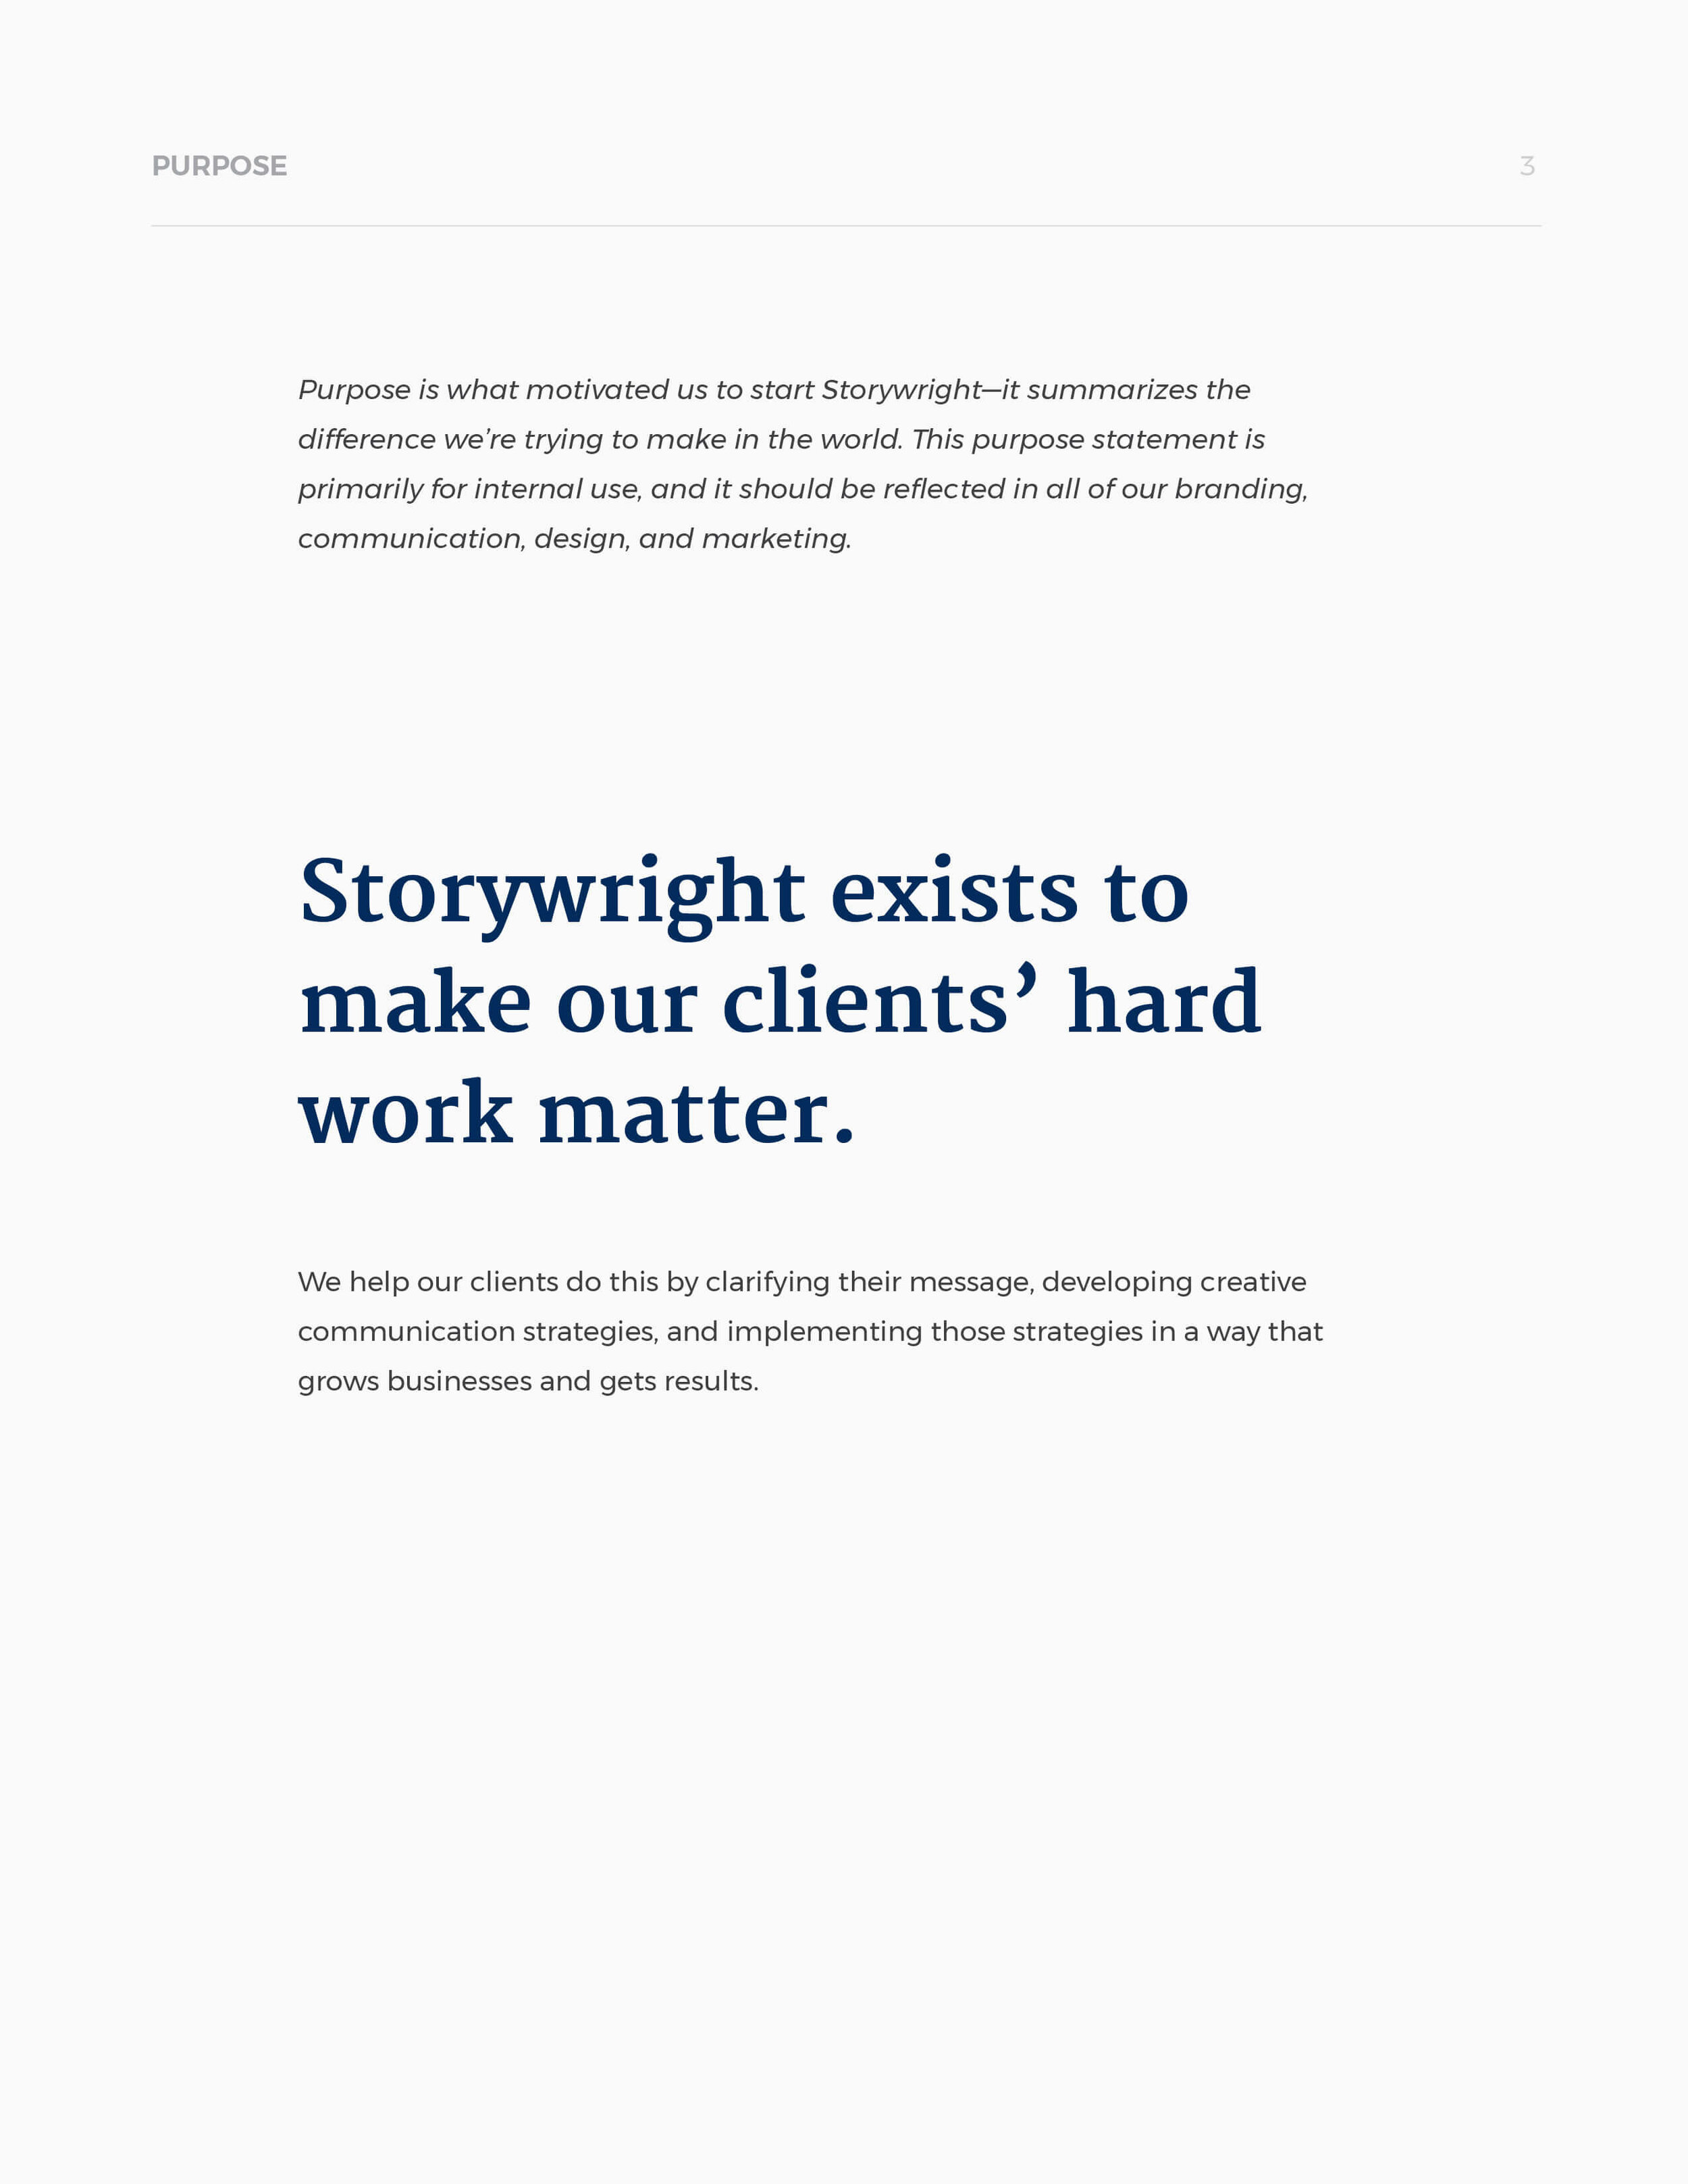 storywright-brand-design-fnl3.jpg